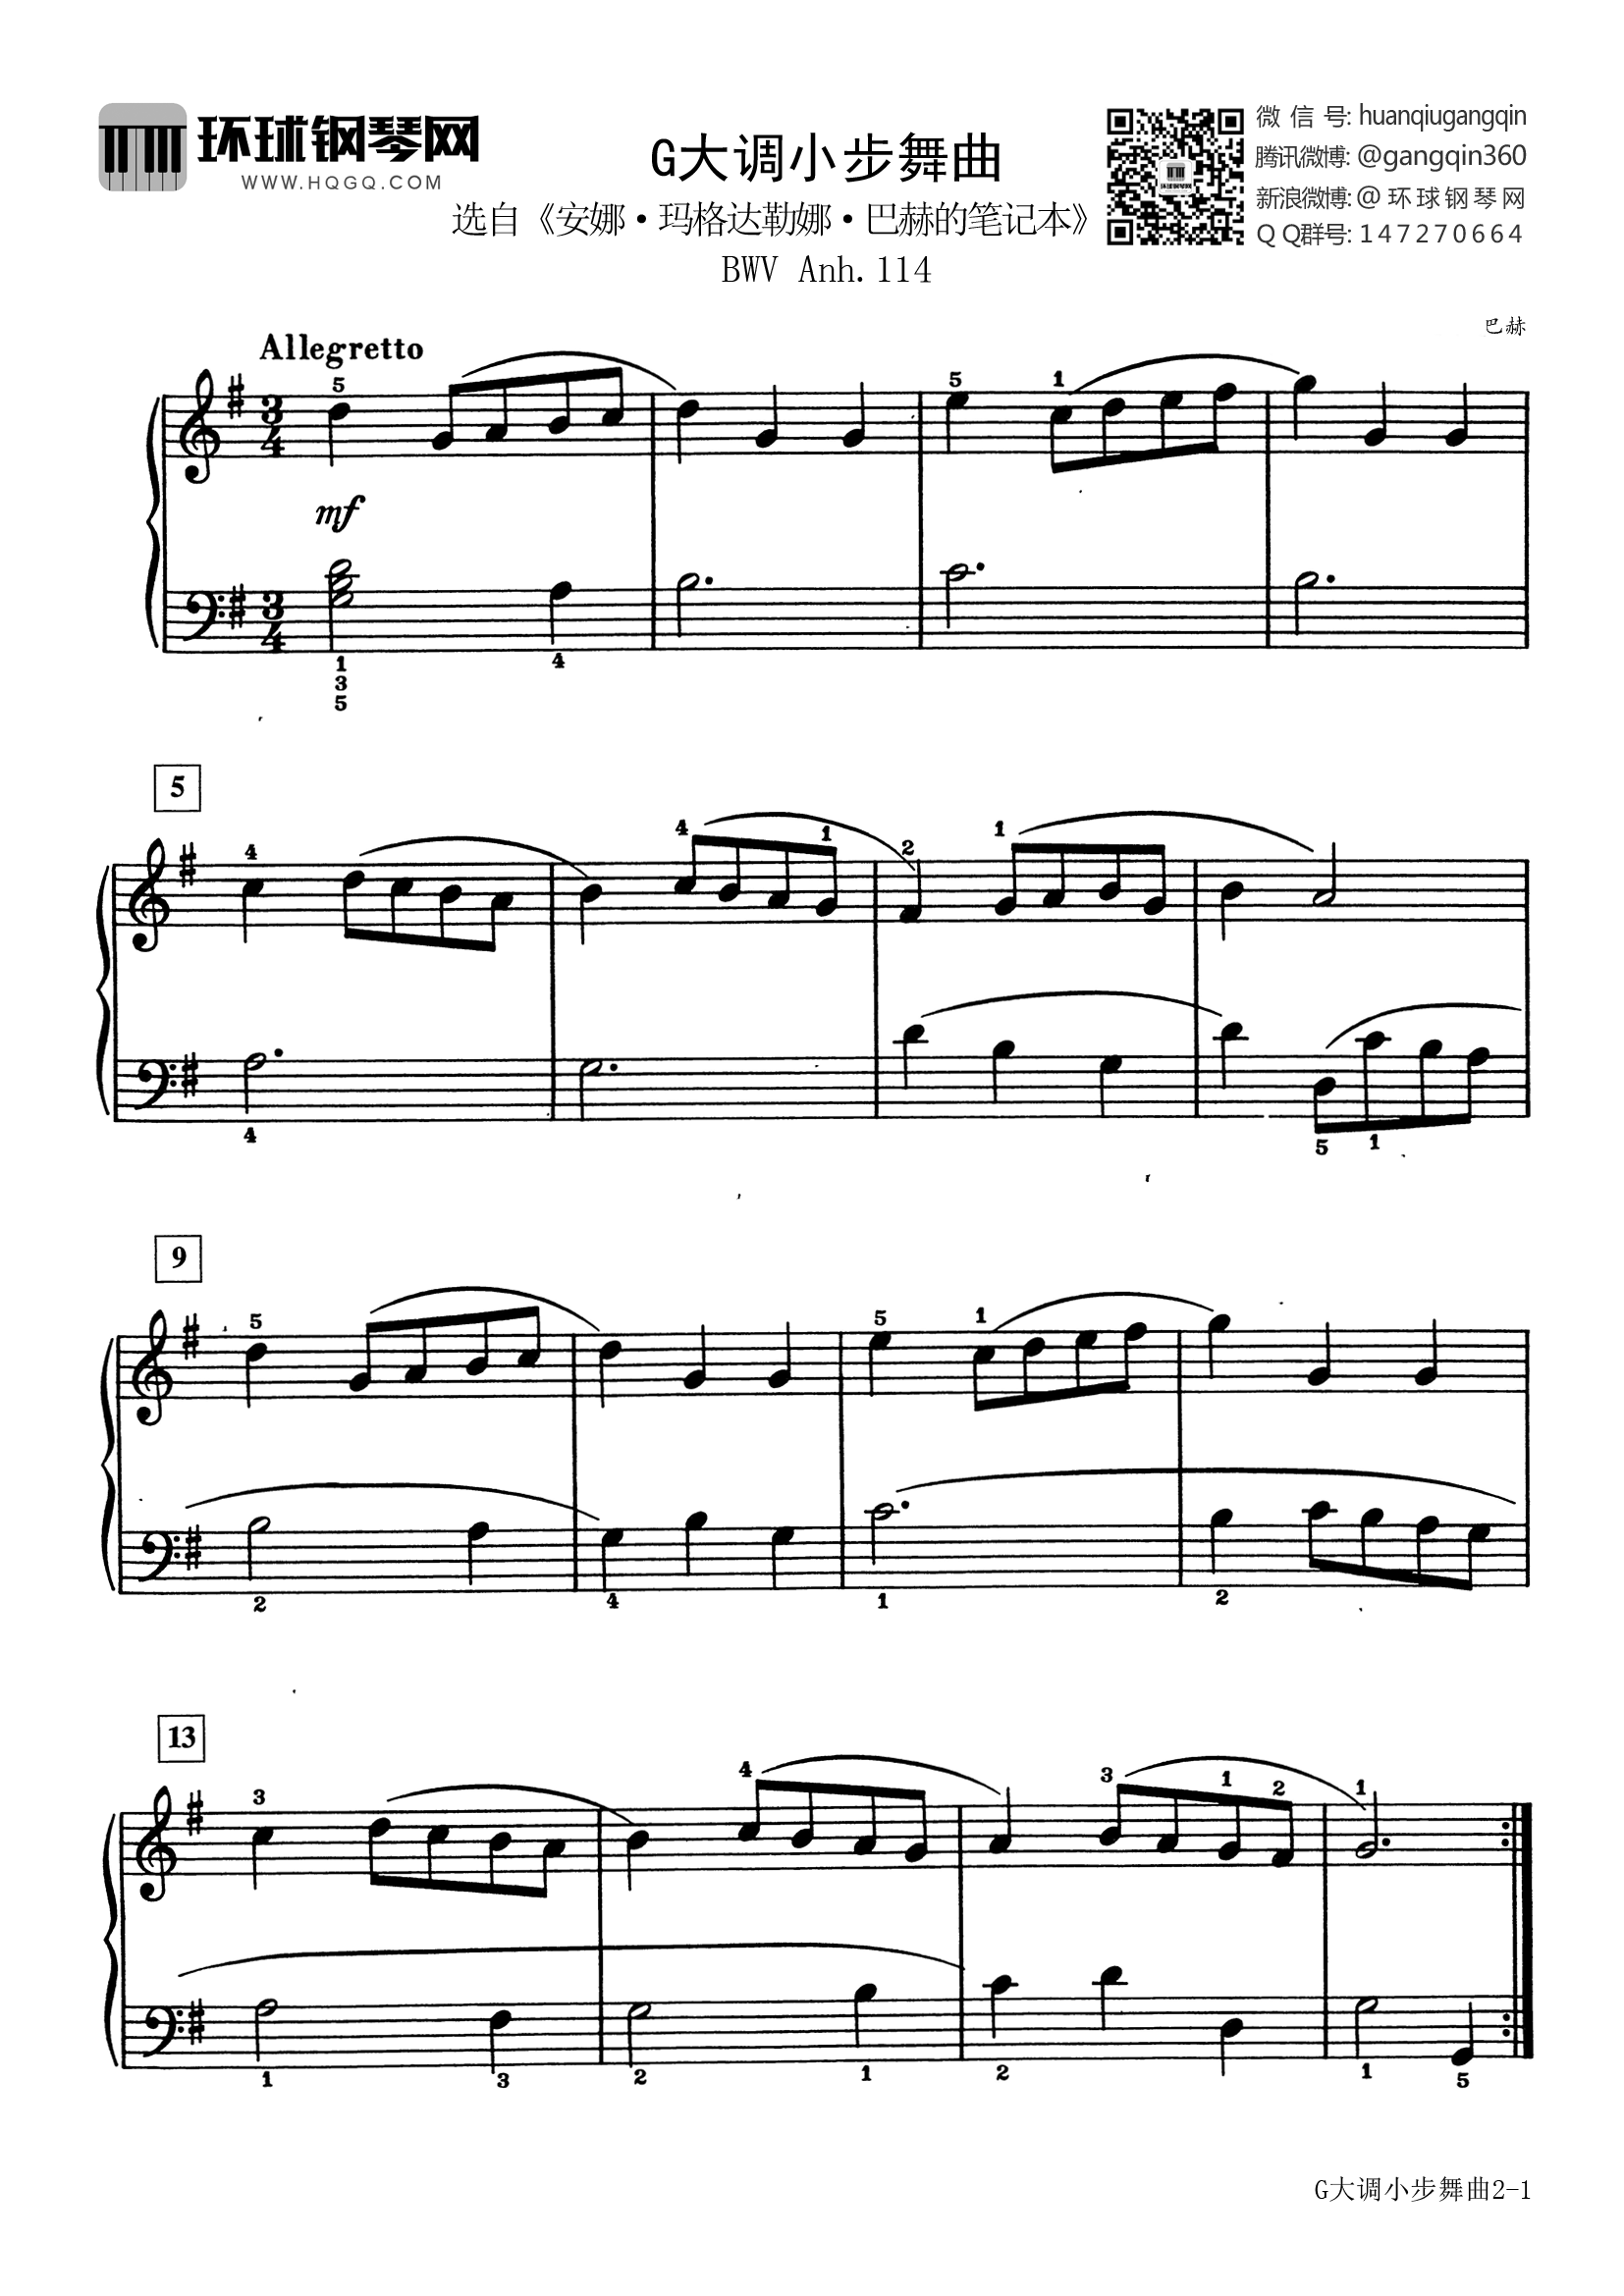 g大调小步舞曲(选自《巴斯蒂安世界钢琴名曲集1》)-巴赫